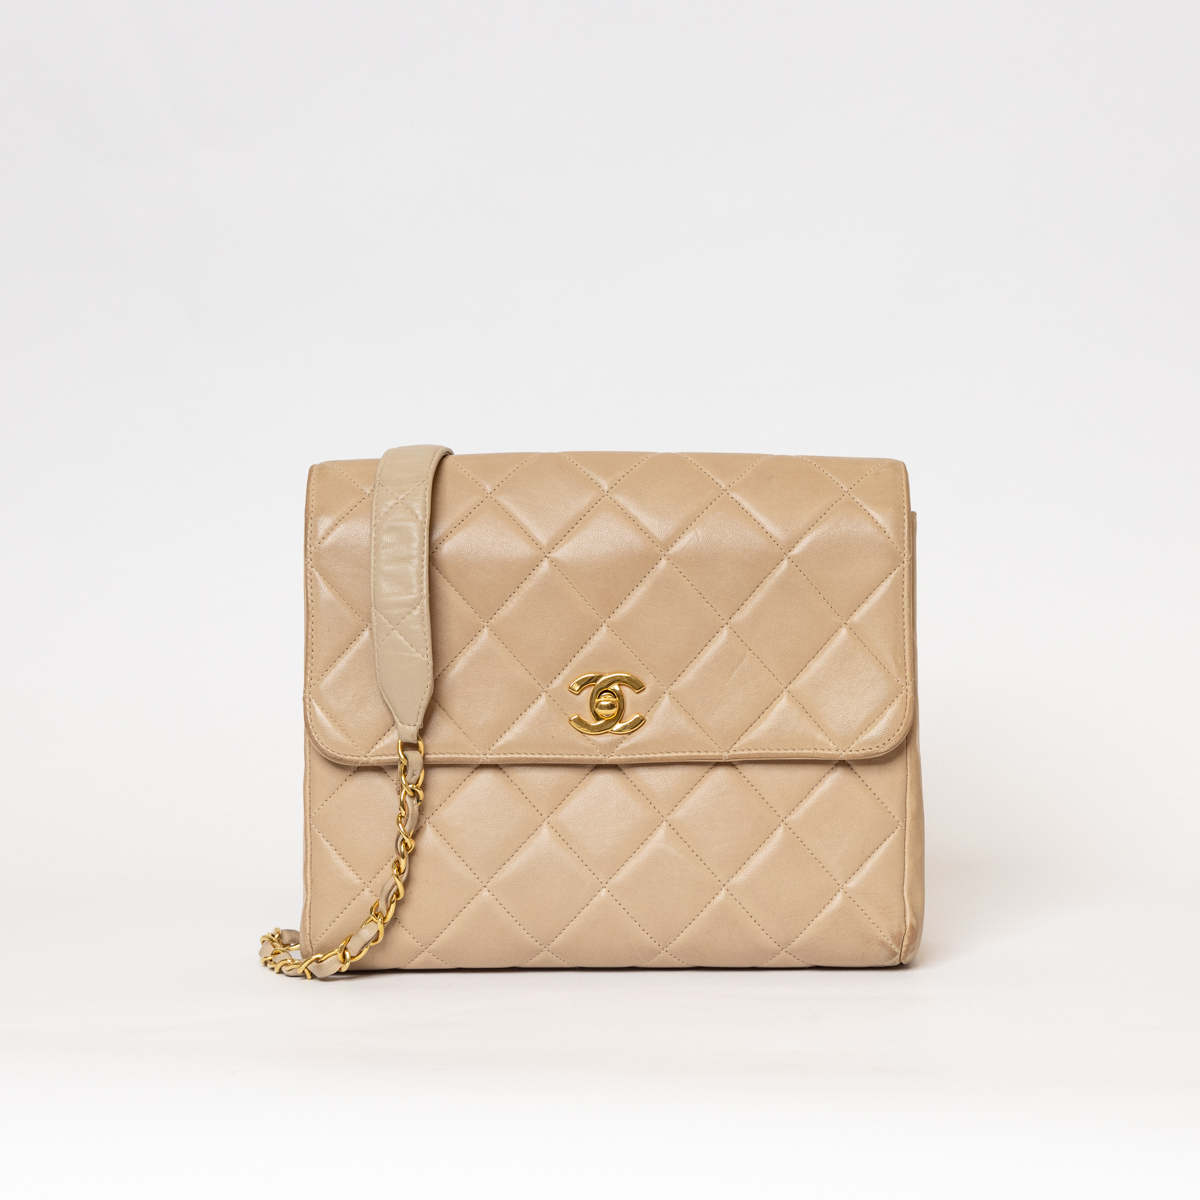 Chanel Timeless Single Flap Bag Lambskin Beige GHW